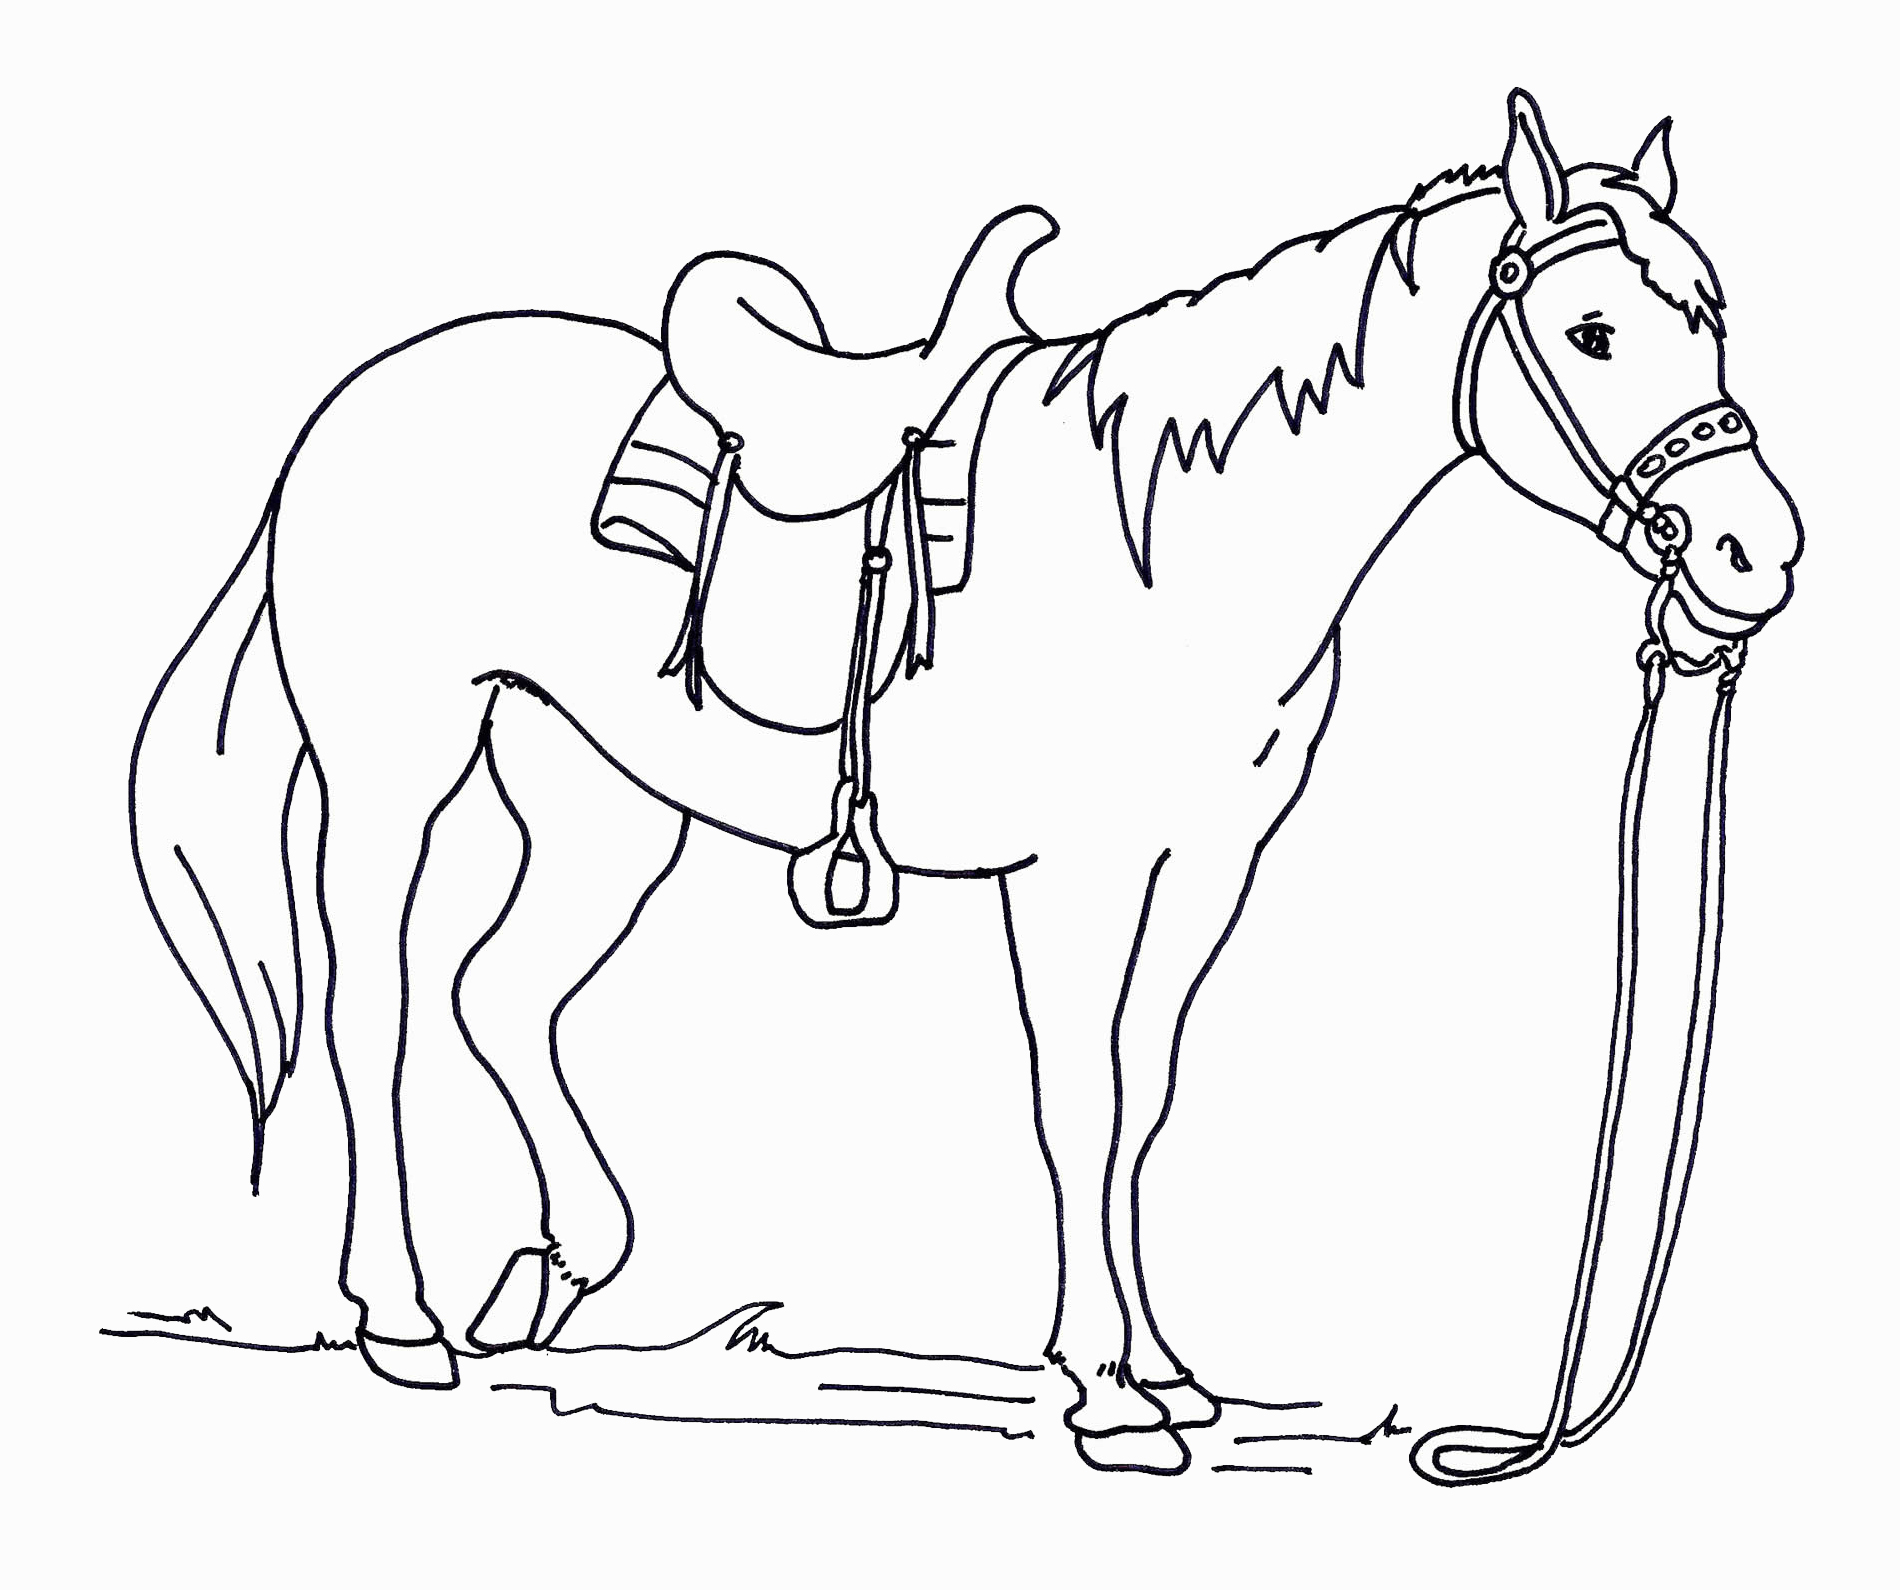 Раскрасить лошадку. Раскраска. Лошади. Раскраска конь. Картинки для раскрашивания лошадки. Лошадка раскраска для малышей.